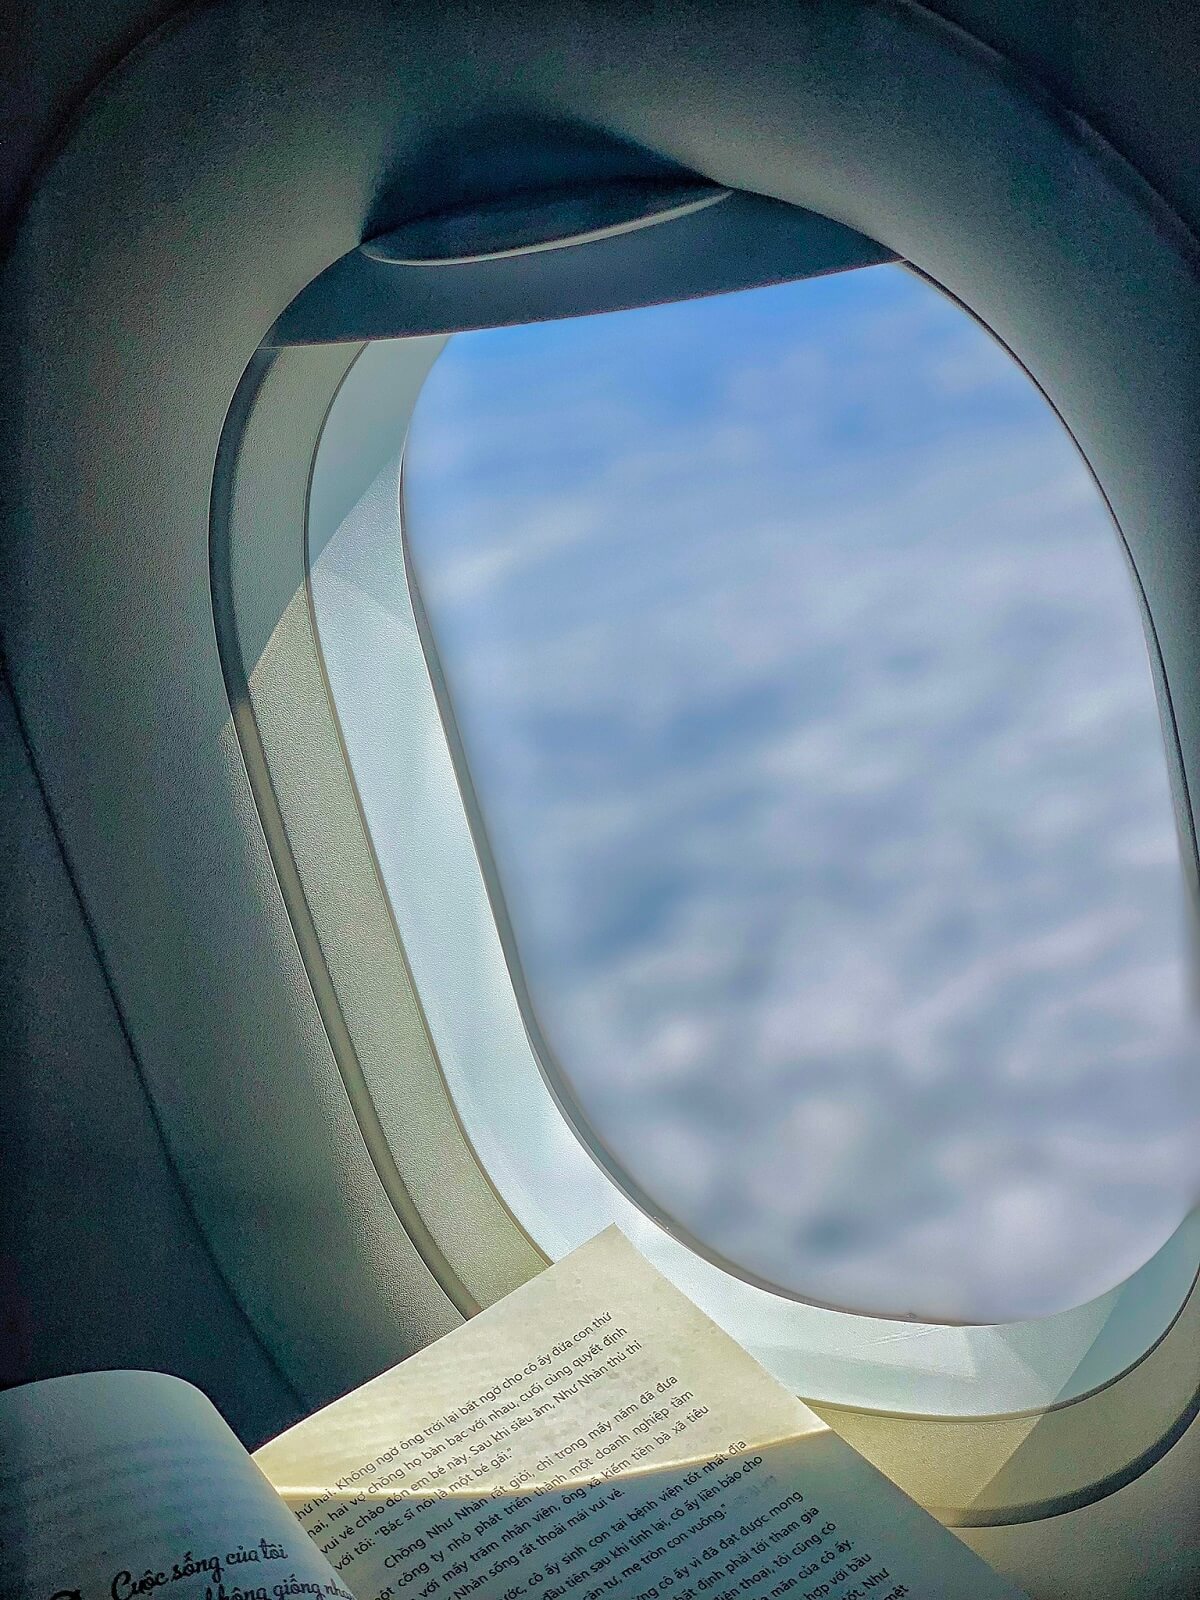 Ghế cạnh cửa sổ sẽ giúp bạn tận hưởng hành trình bay thoải mái, yên tĩnh.